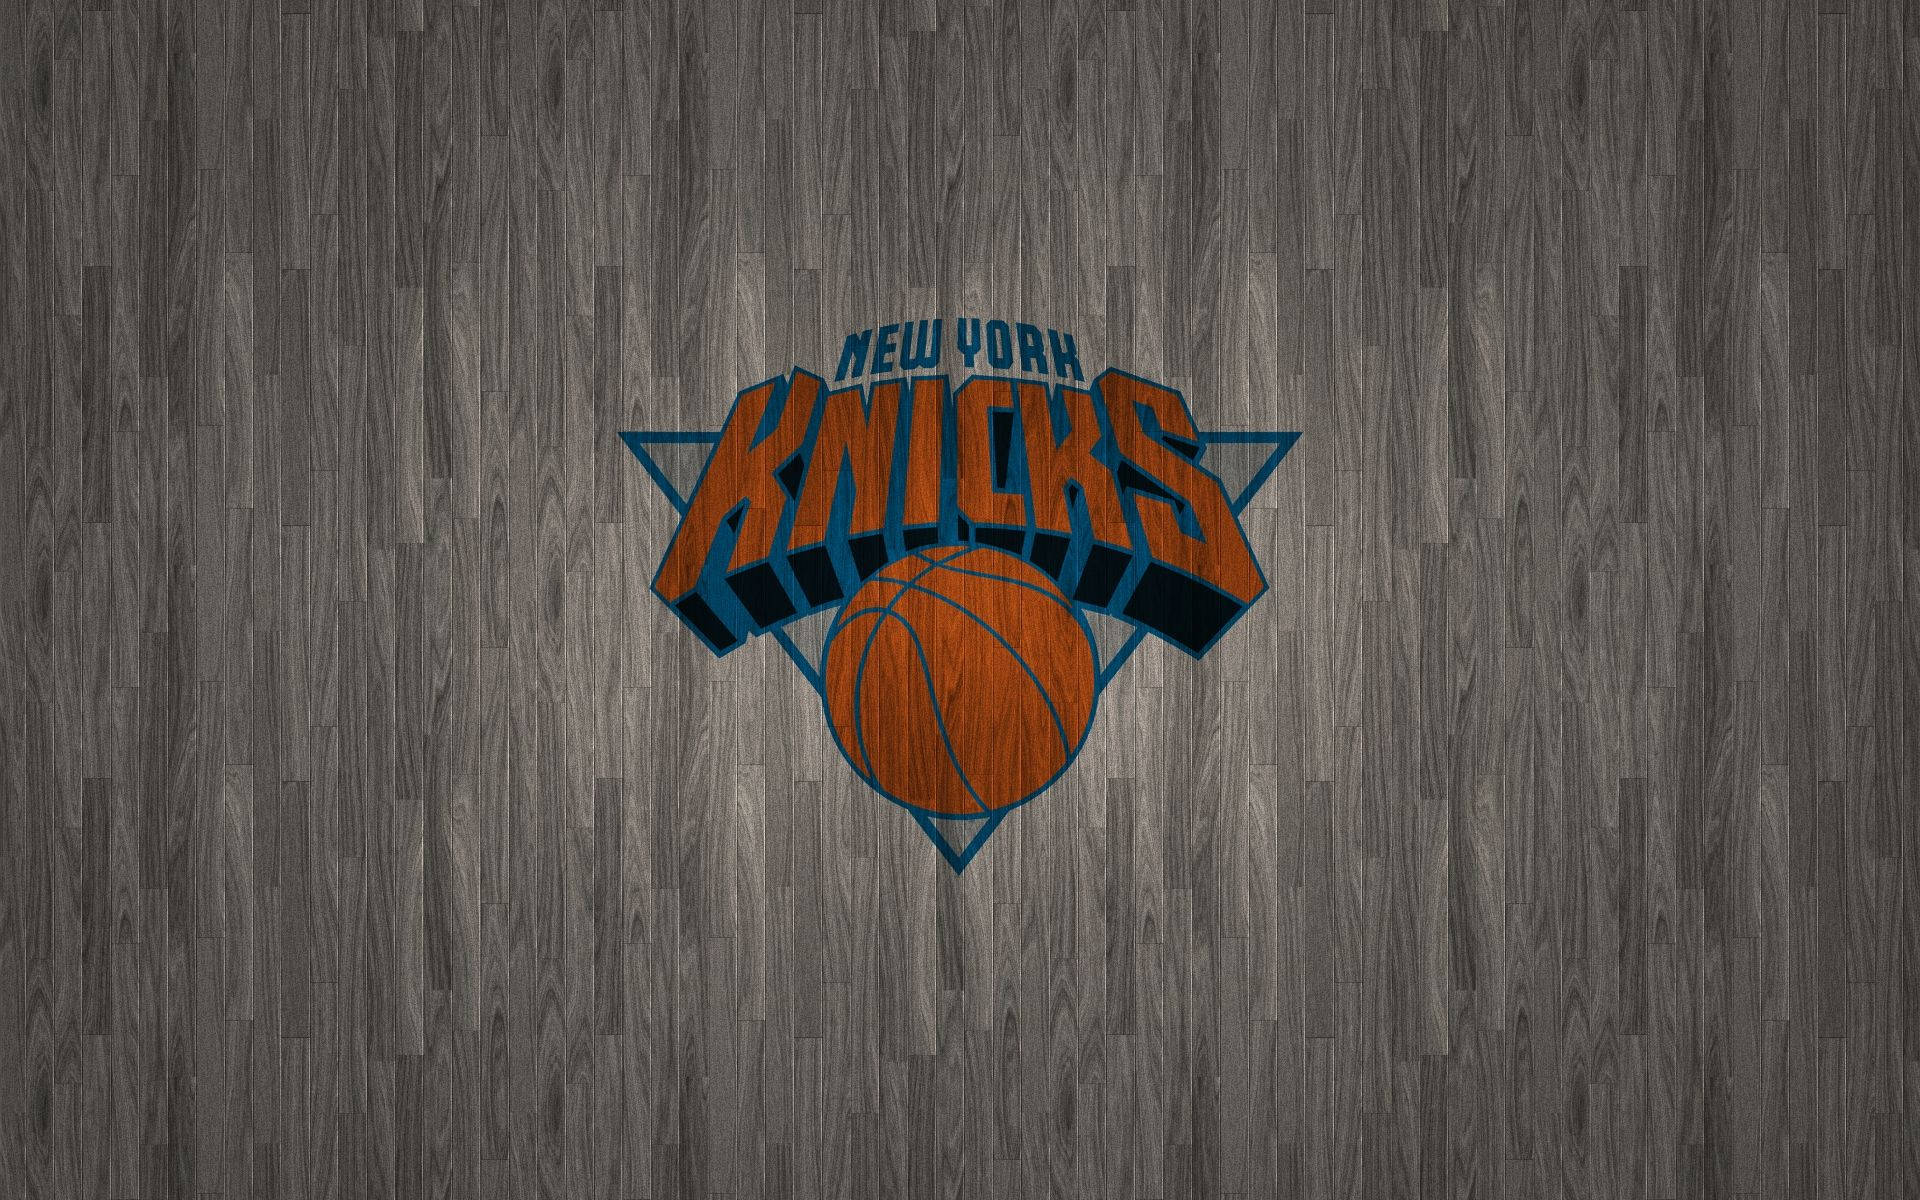 Backgroundfundo De Tela Do New York Knicks Em Madeira Cinza. Papel de Parede